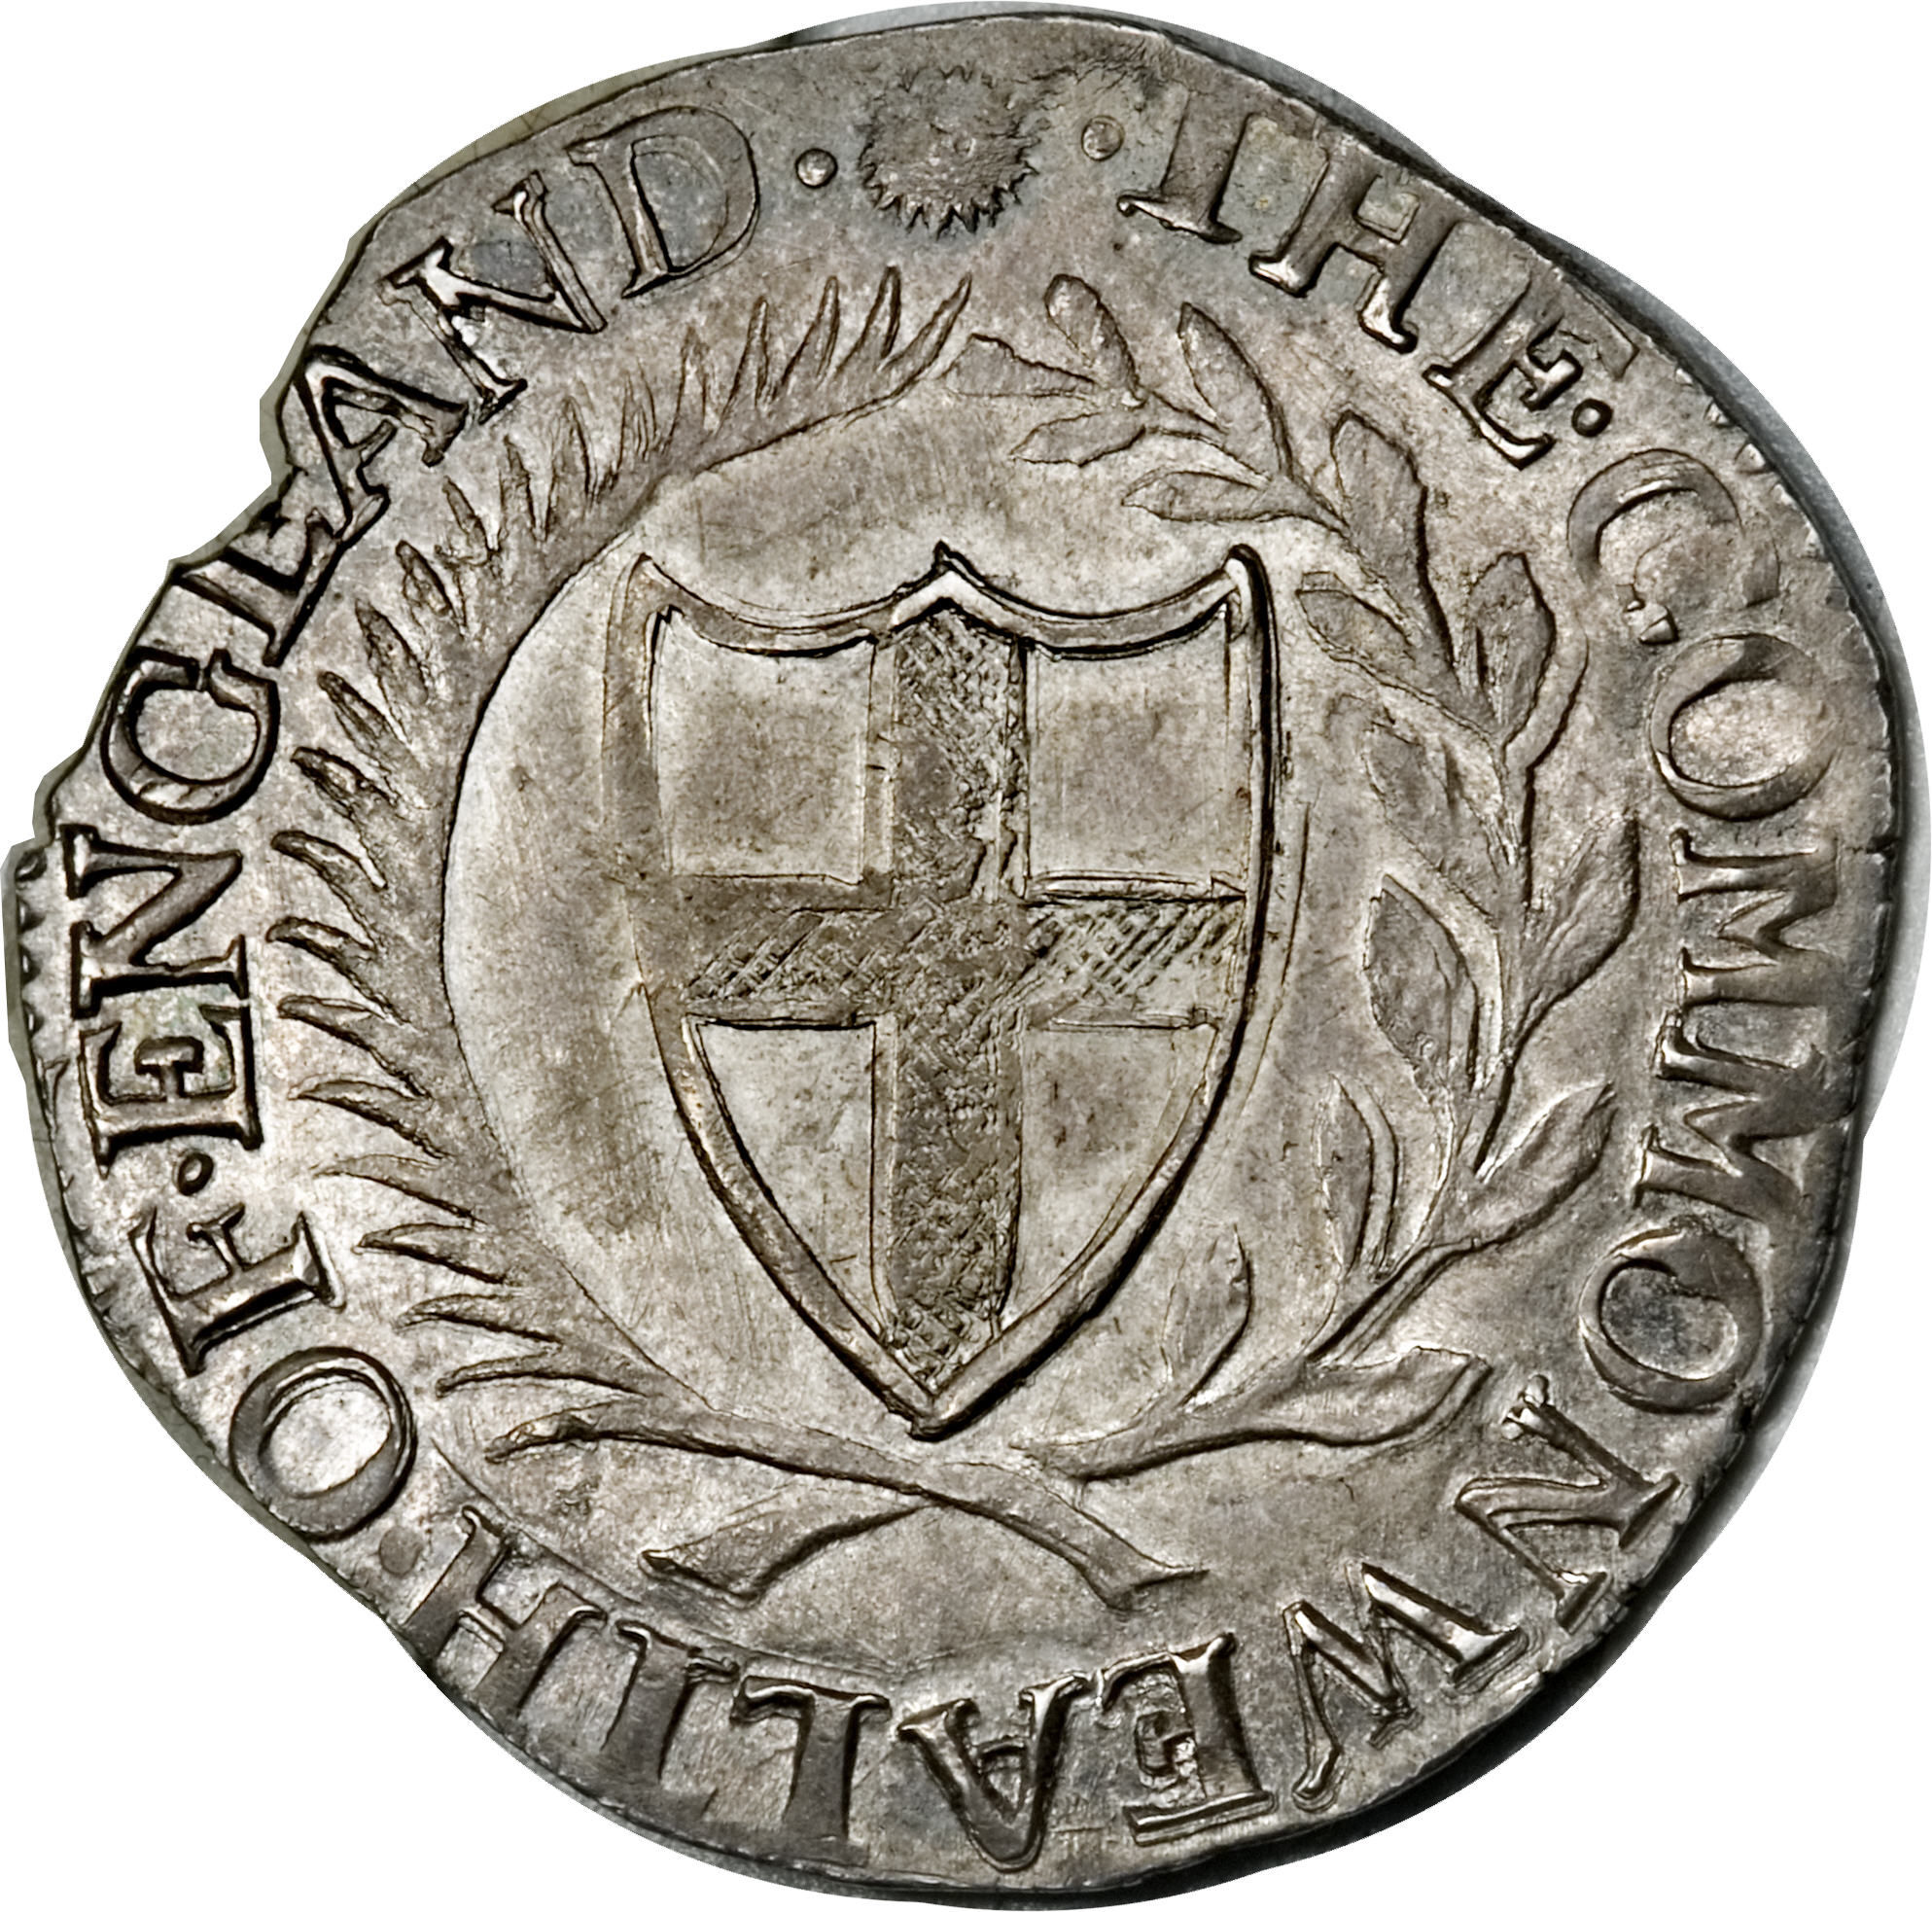 1649 англия. Шиллинг знак. Немецкий шиллинг. Commonwealth of England 1649. Английская монета 1649 г.